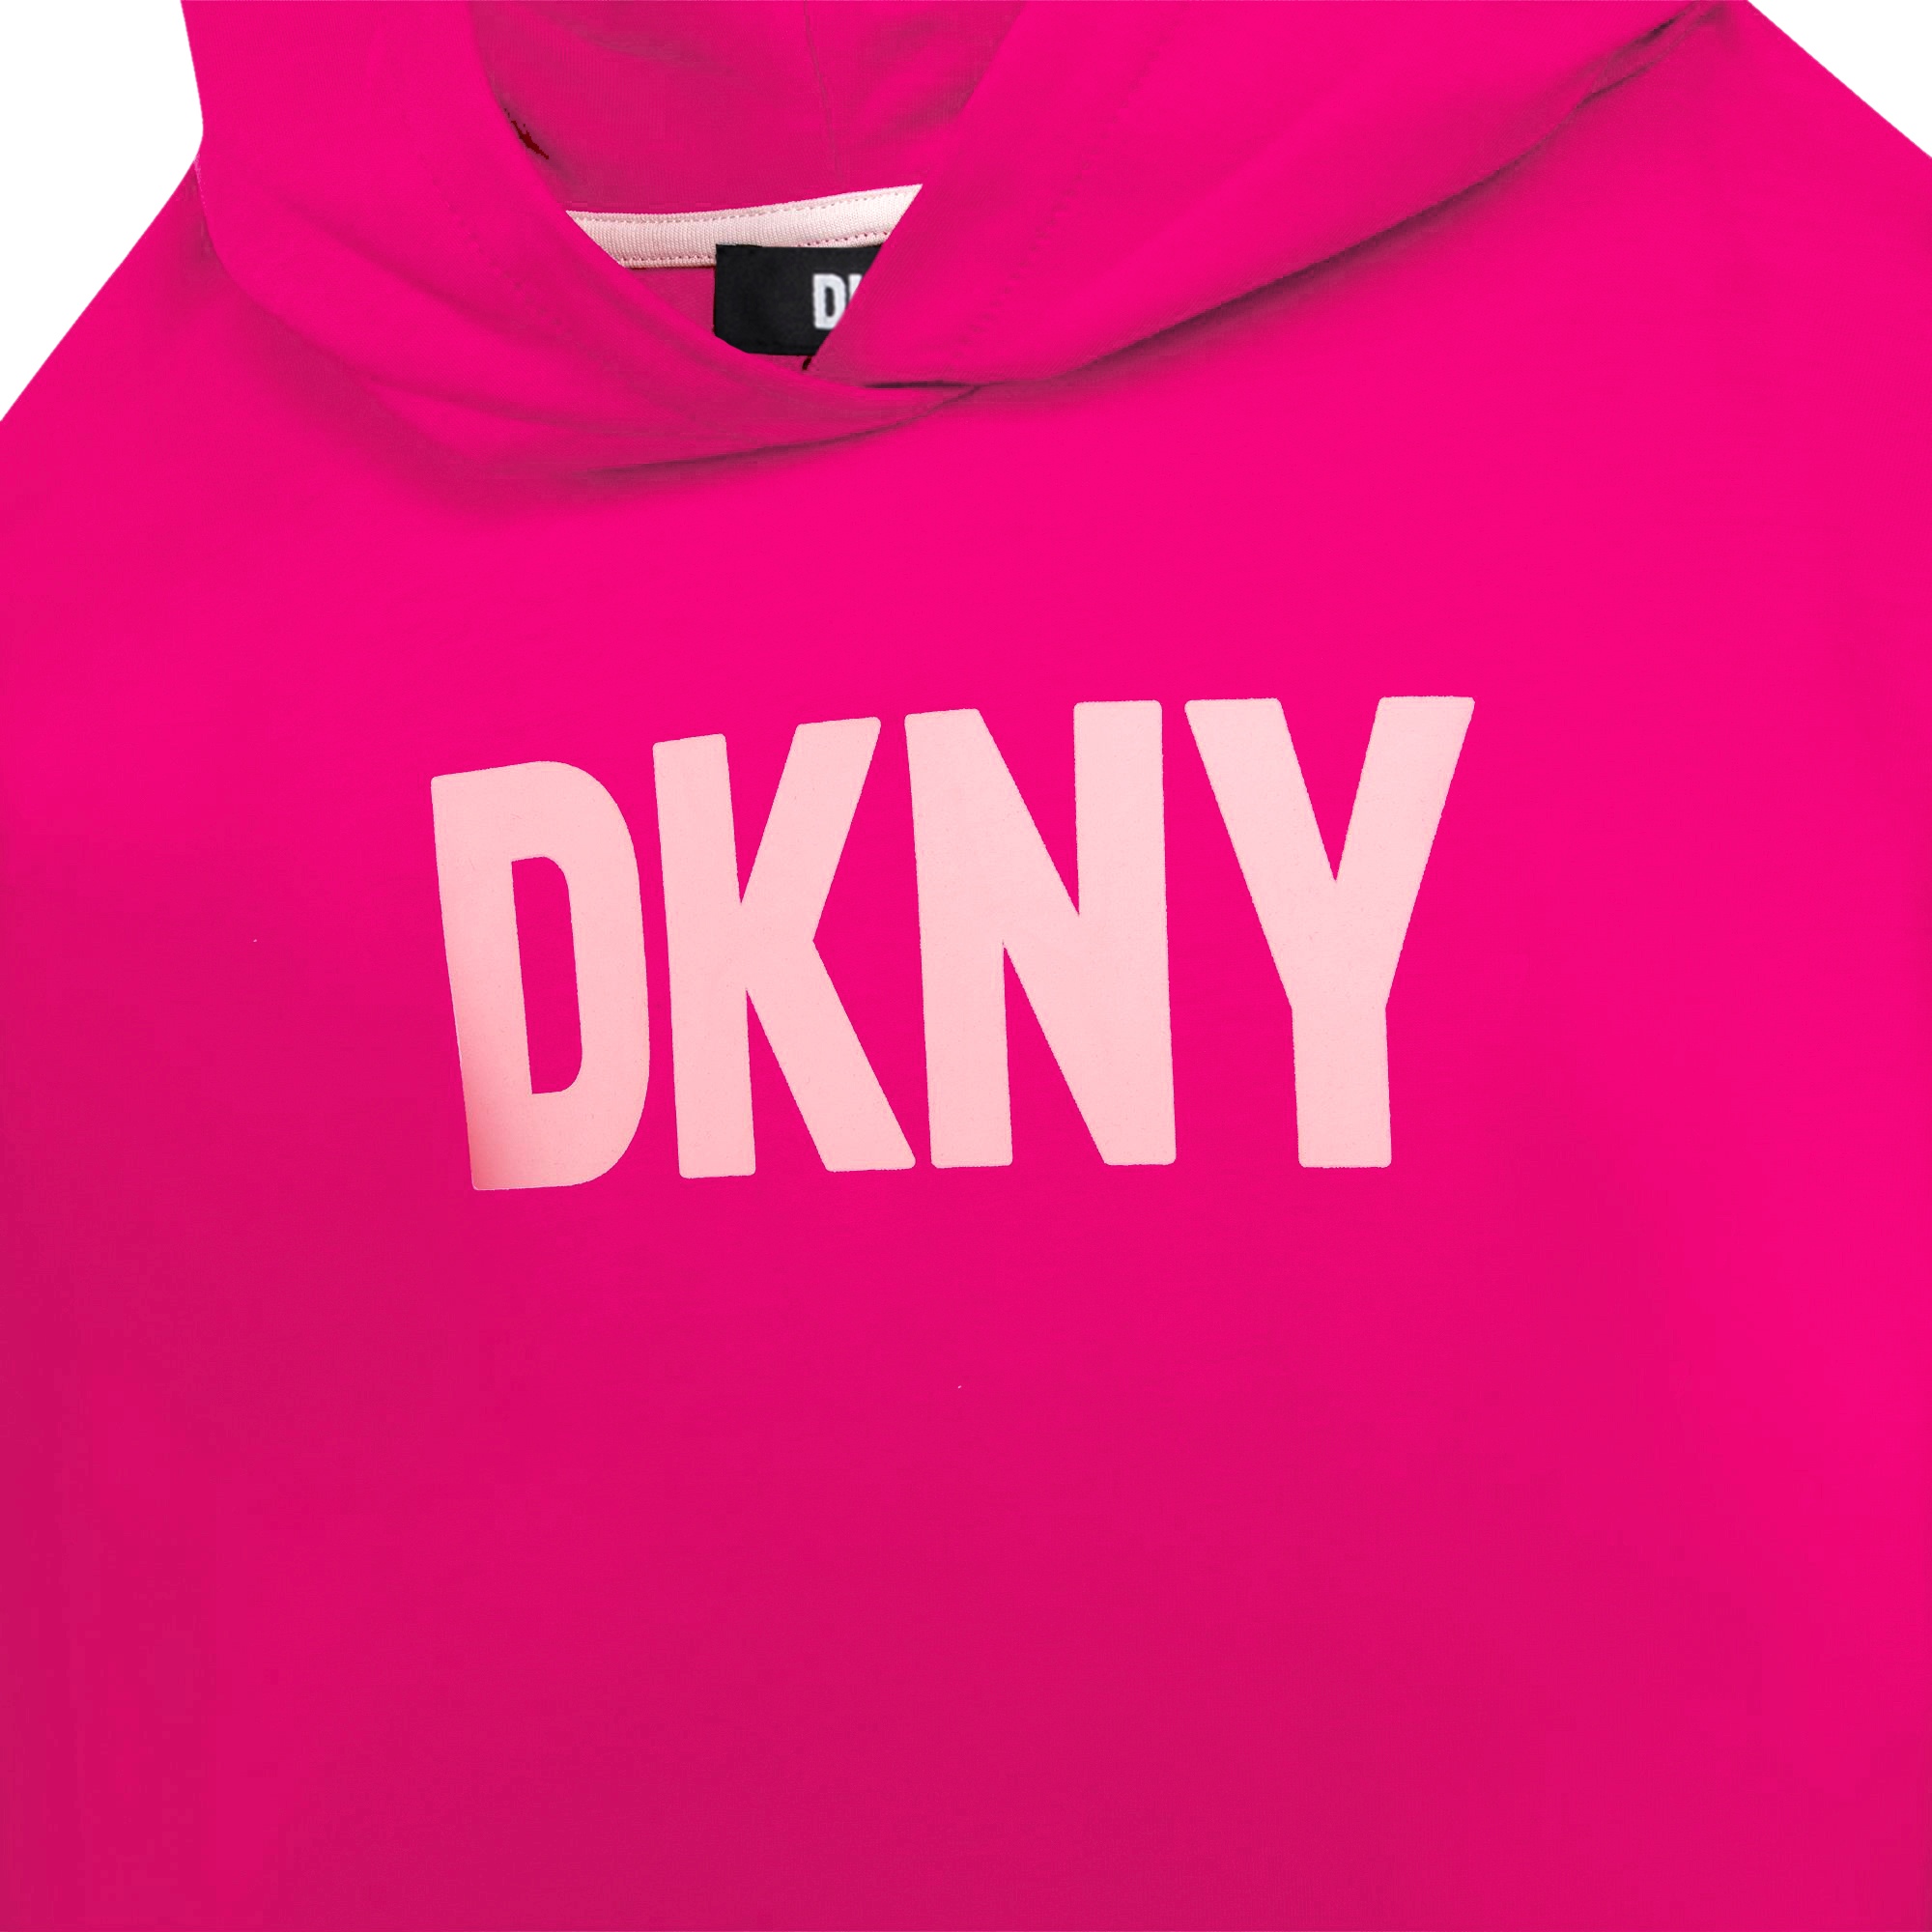 Fine-fleece hooded dress DKNY for GIRL